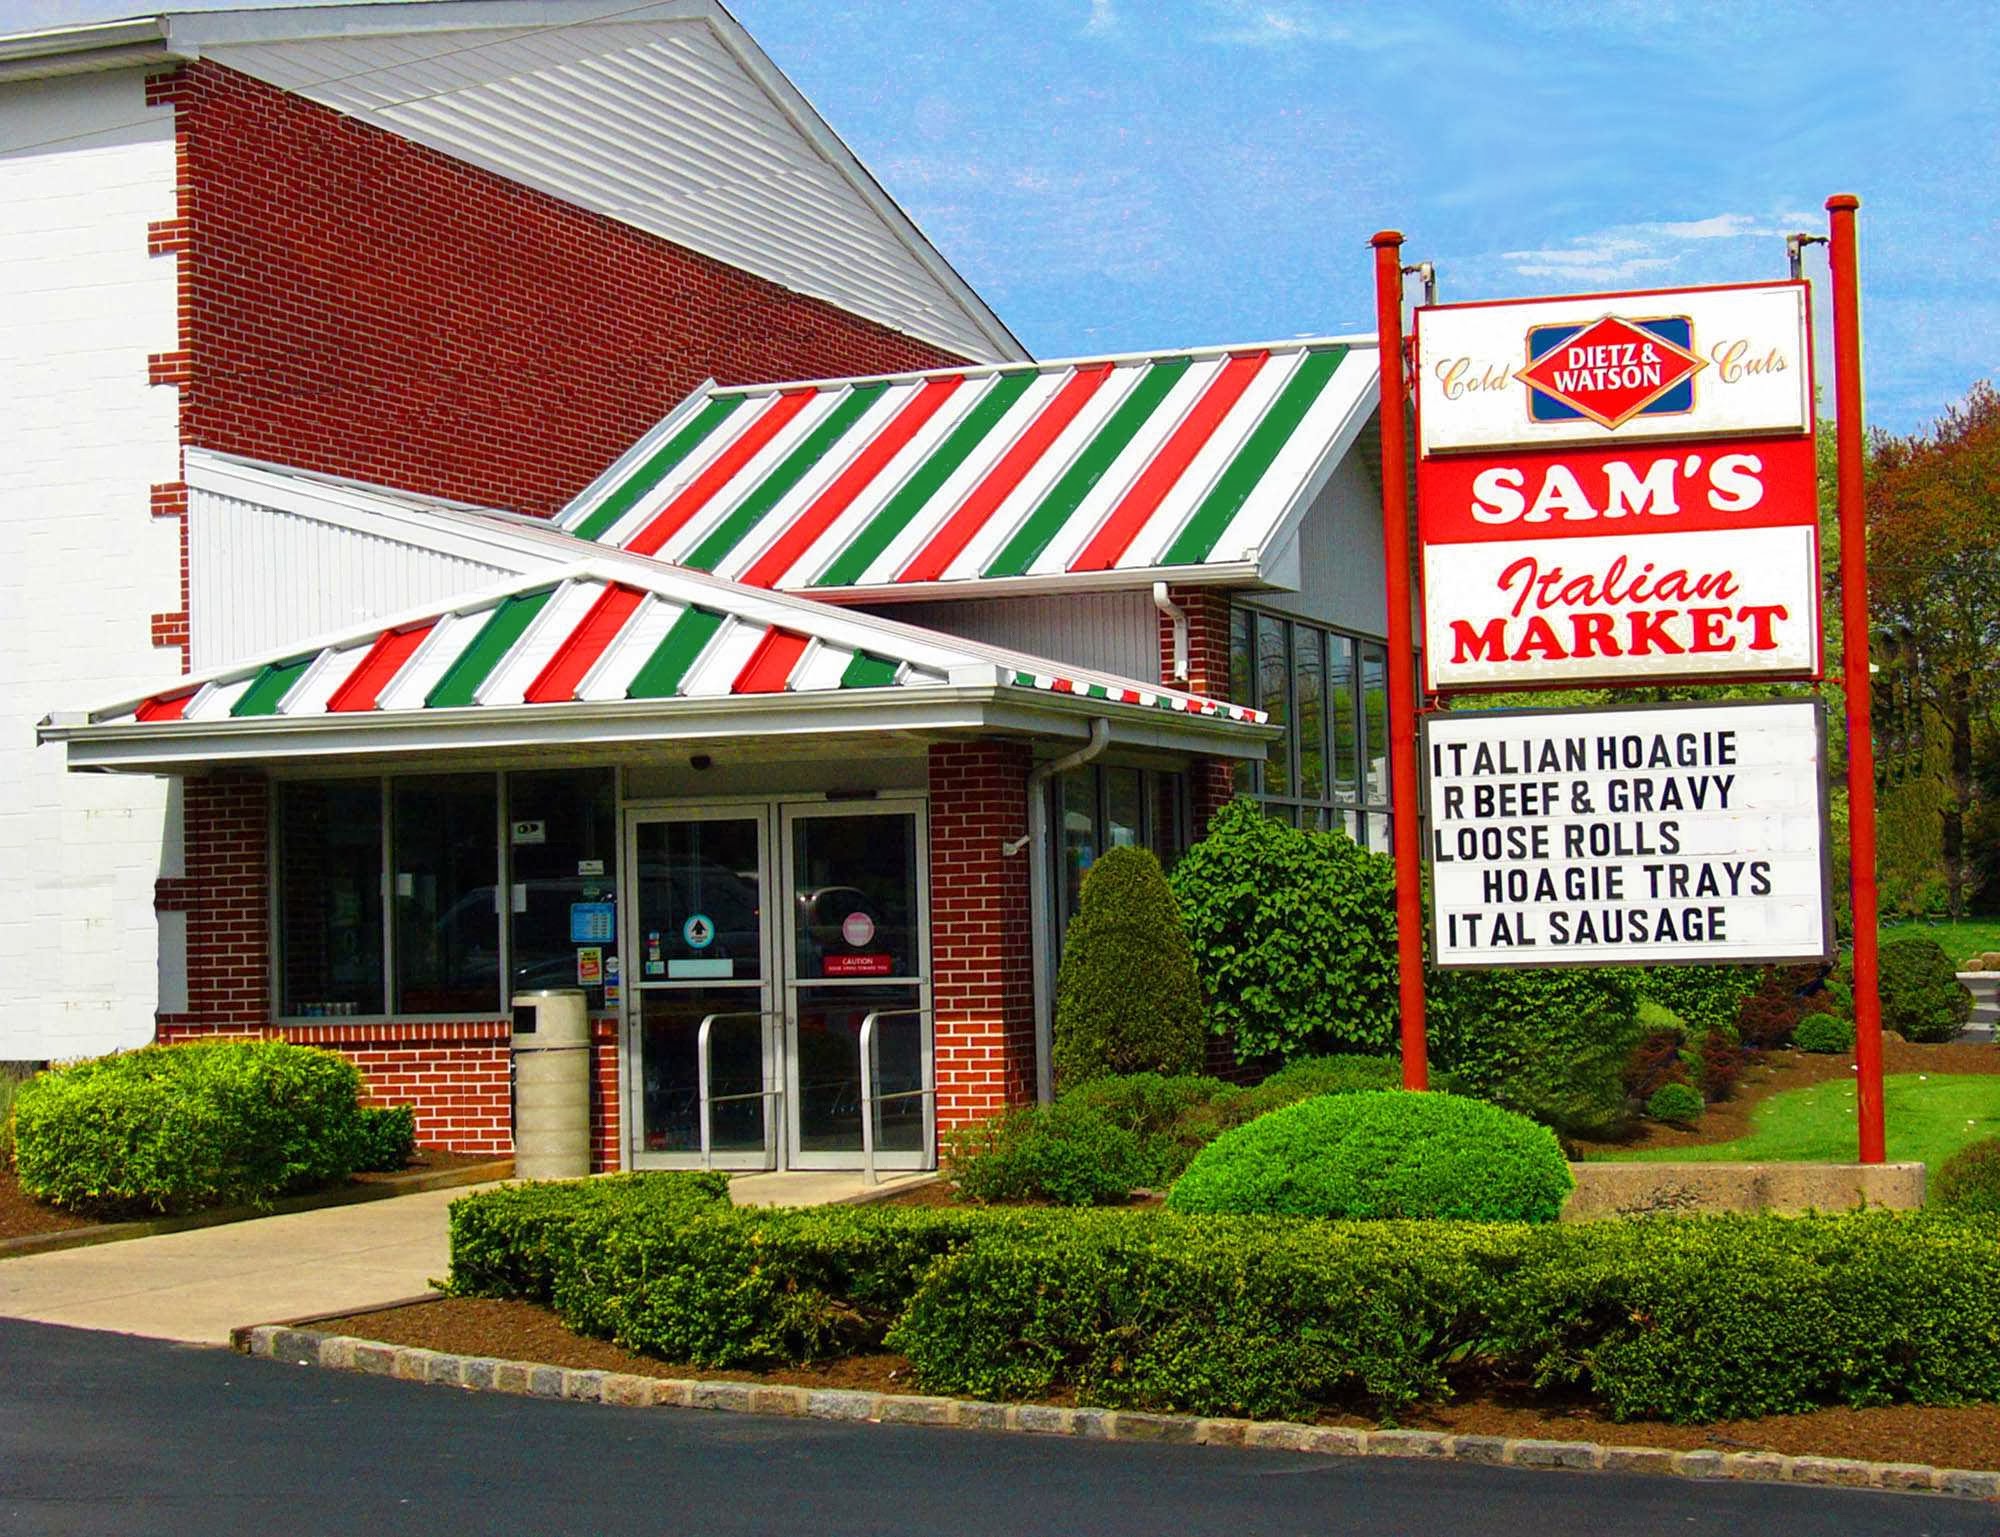 Sam's Italian Market and Bakery